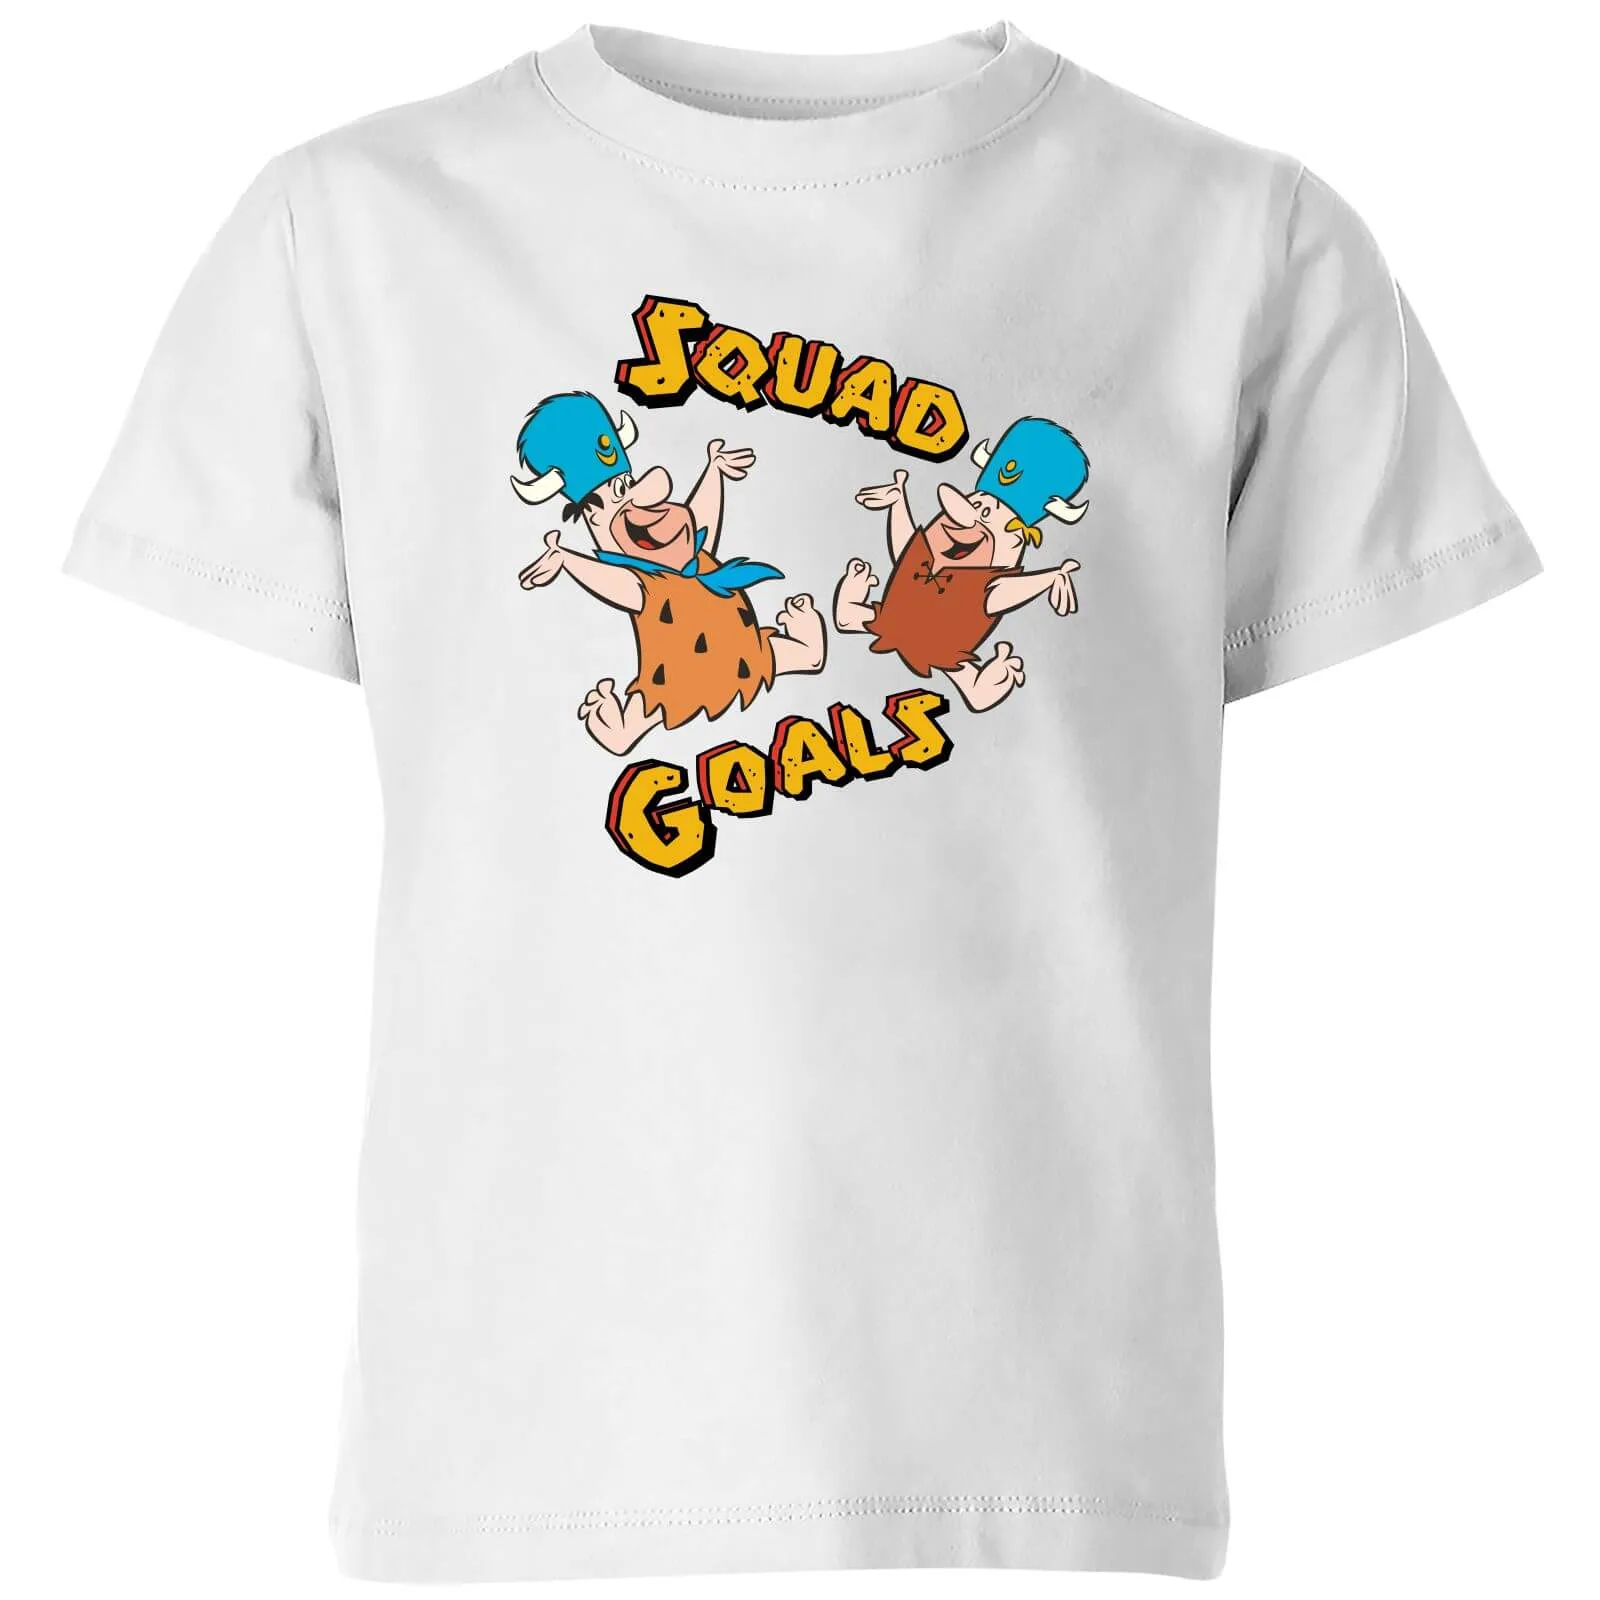 The Flintstones Squad Goals Kids' T-Shirt - White - 7-8 Anni - Bianco